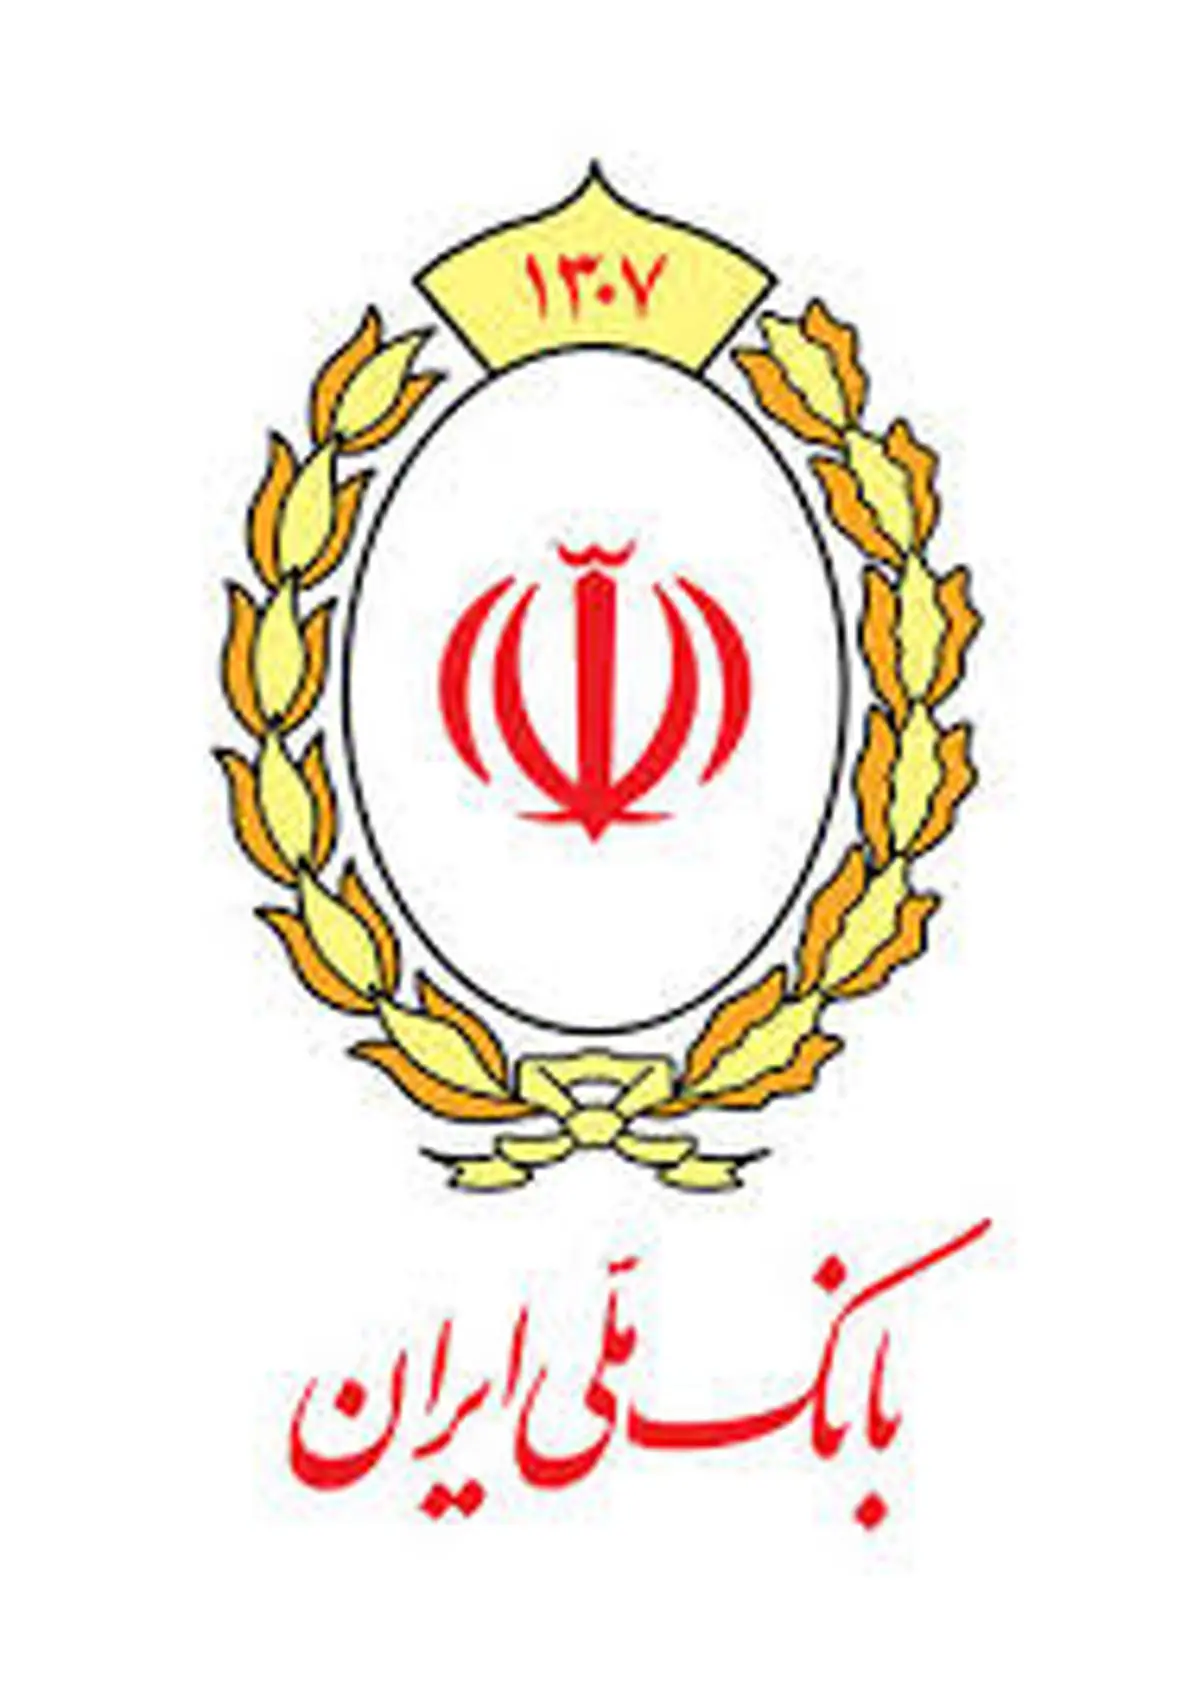 خودکفایی در صنعت نساجی با توان صنعتگران داخلی و حمایت های بانک ملی ایران